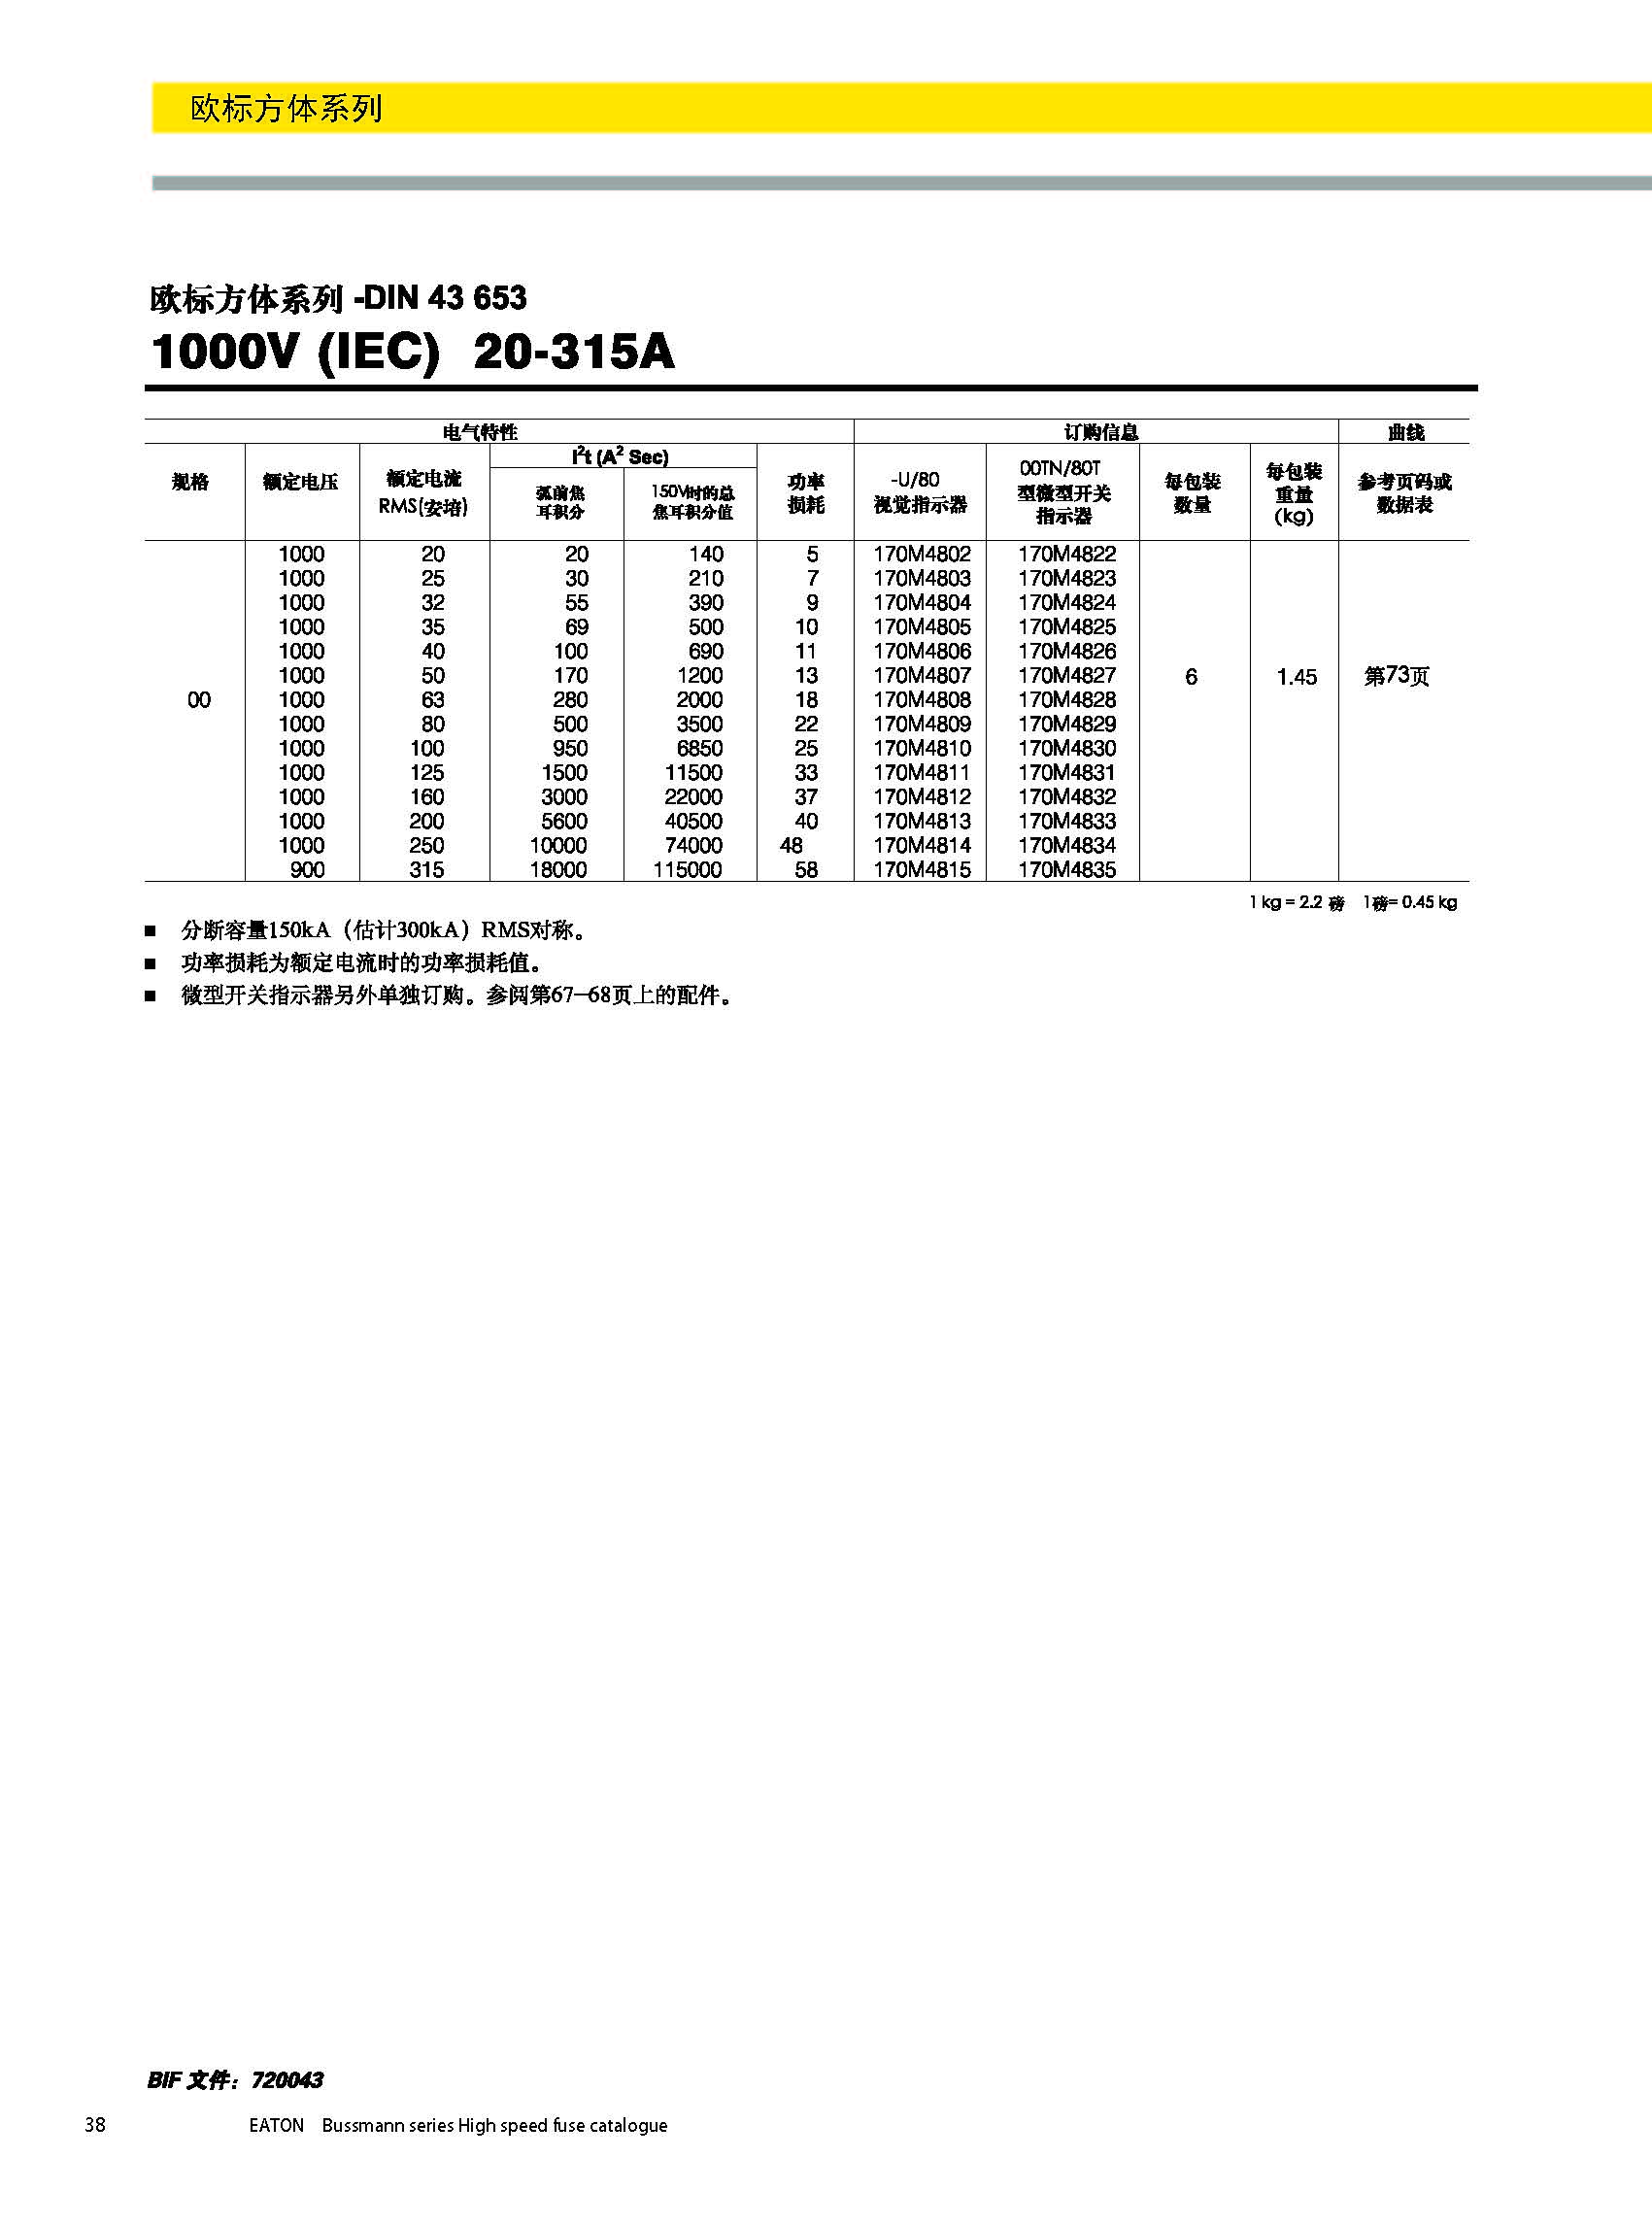 歐標方體DIN43653 1000V 20-315A產品選型參數